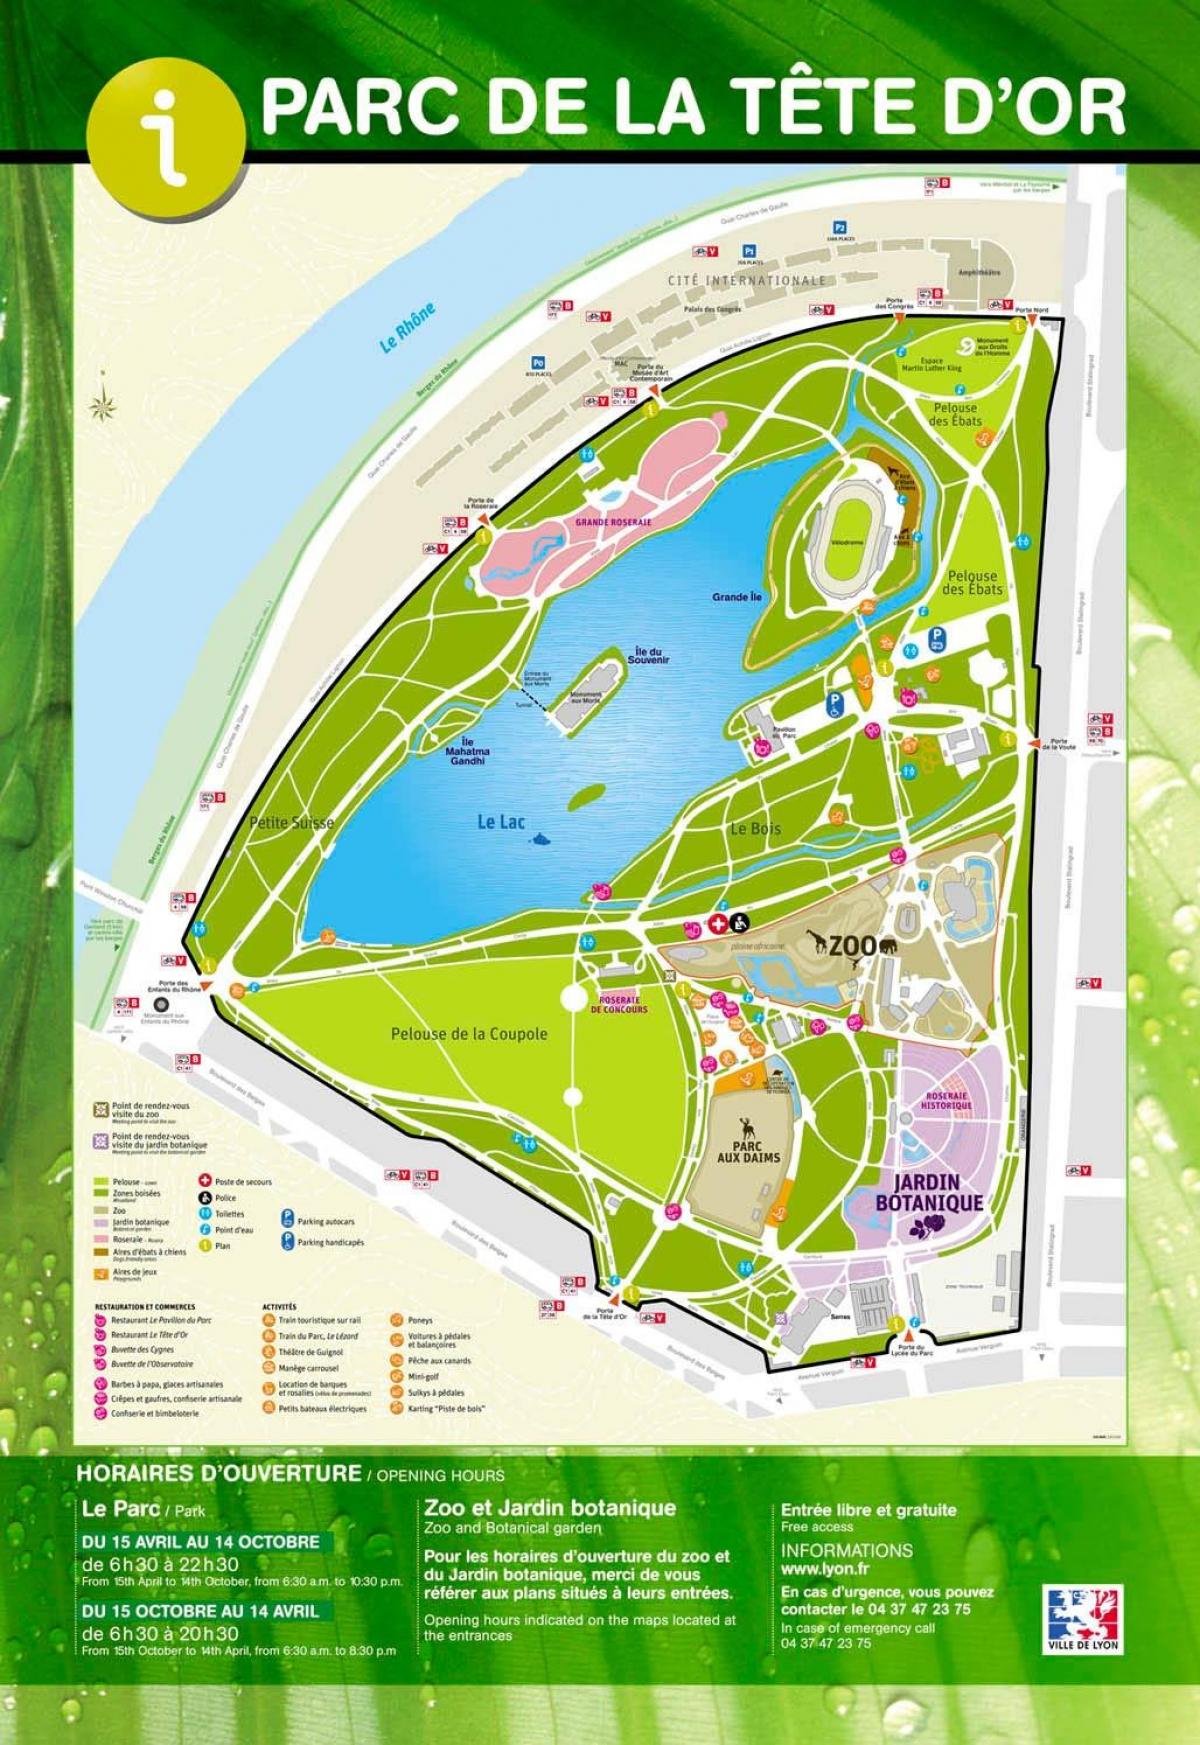 نقشه از پارک لیون